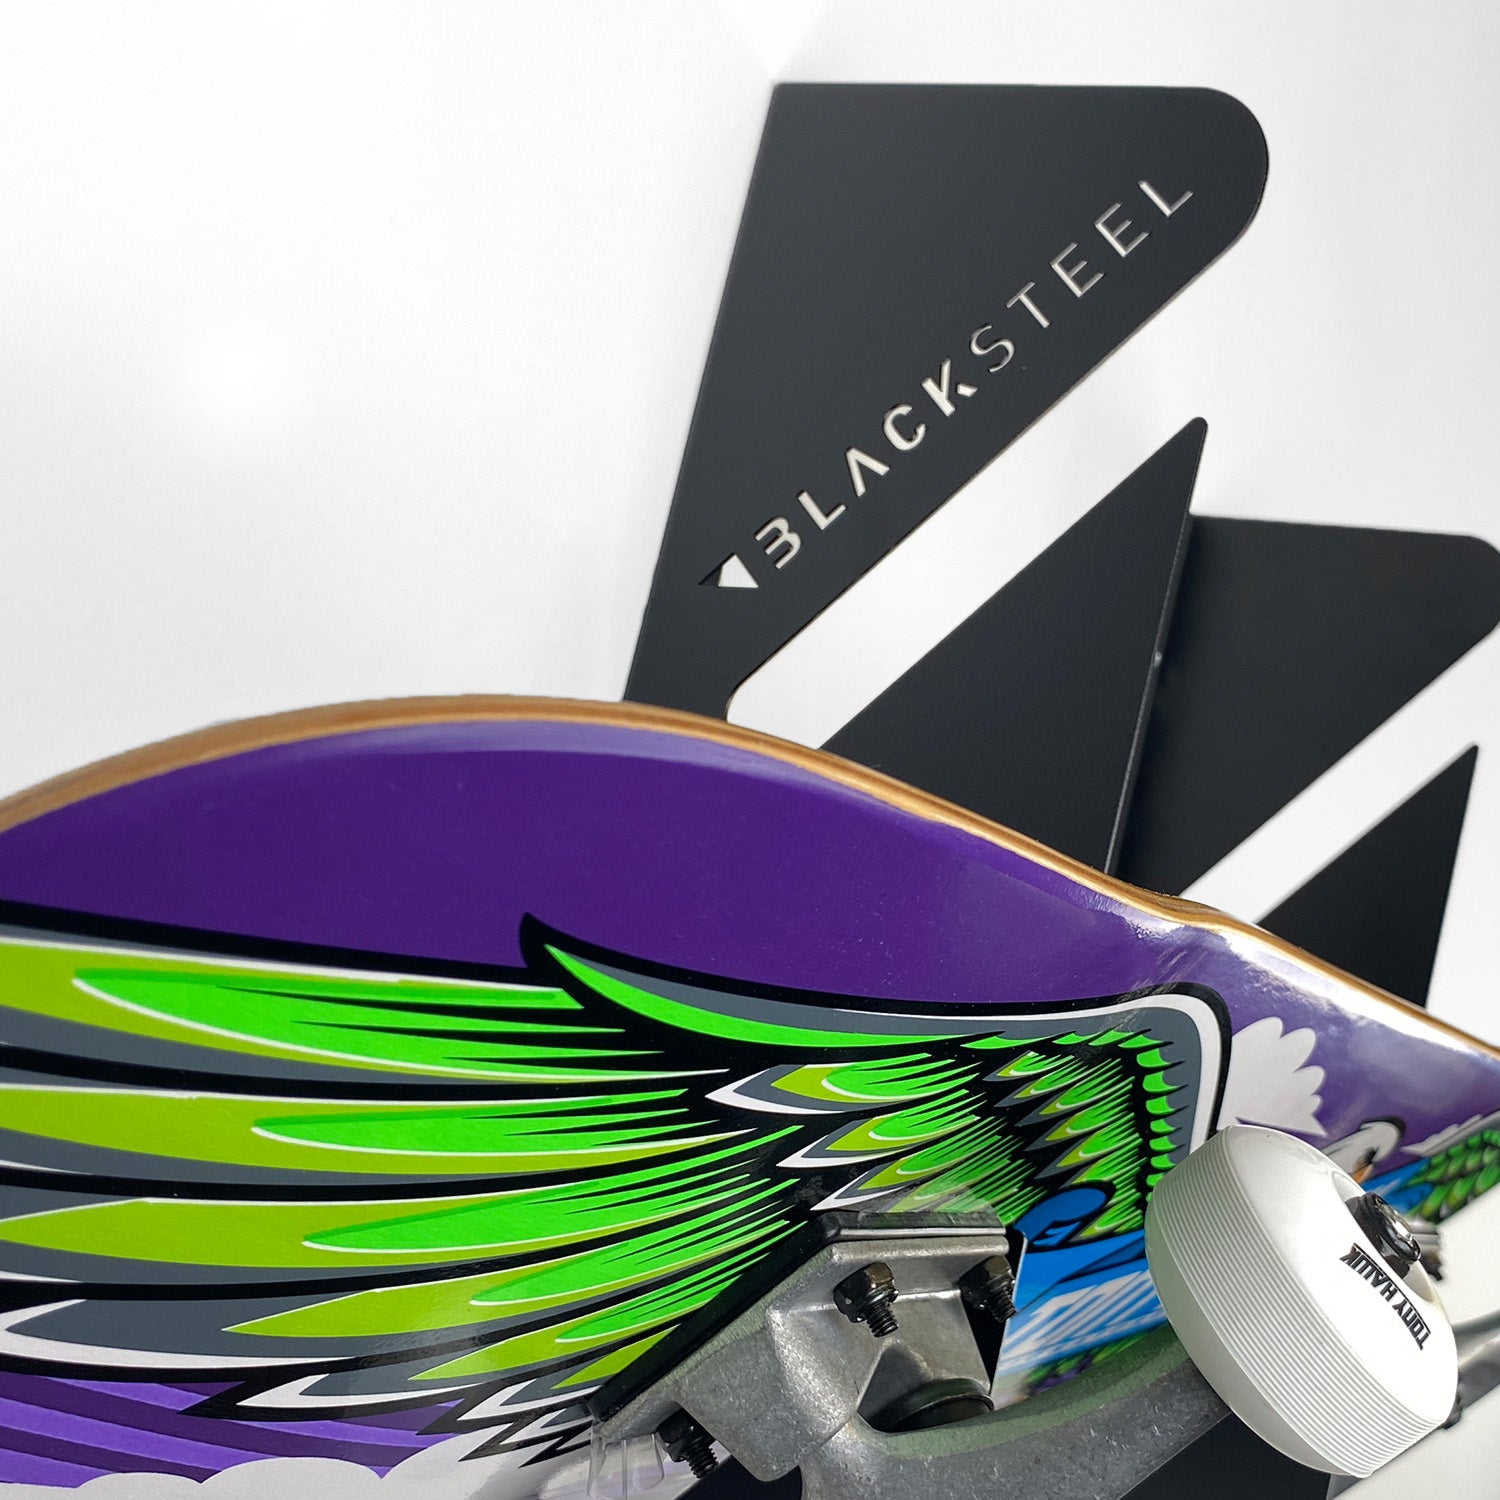 BlackSteel™ Dual Wall Mount Skateboard Rack Brackets